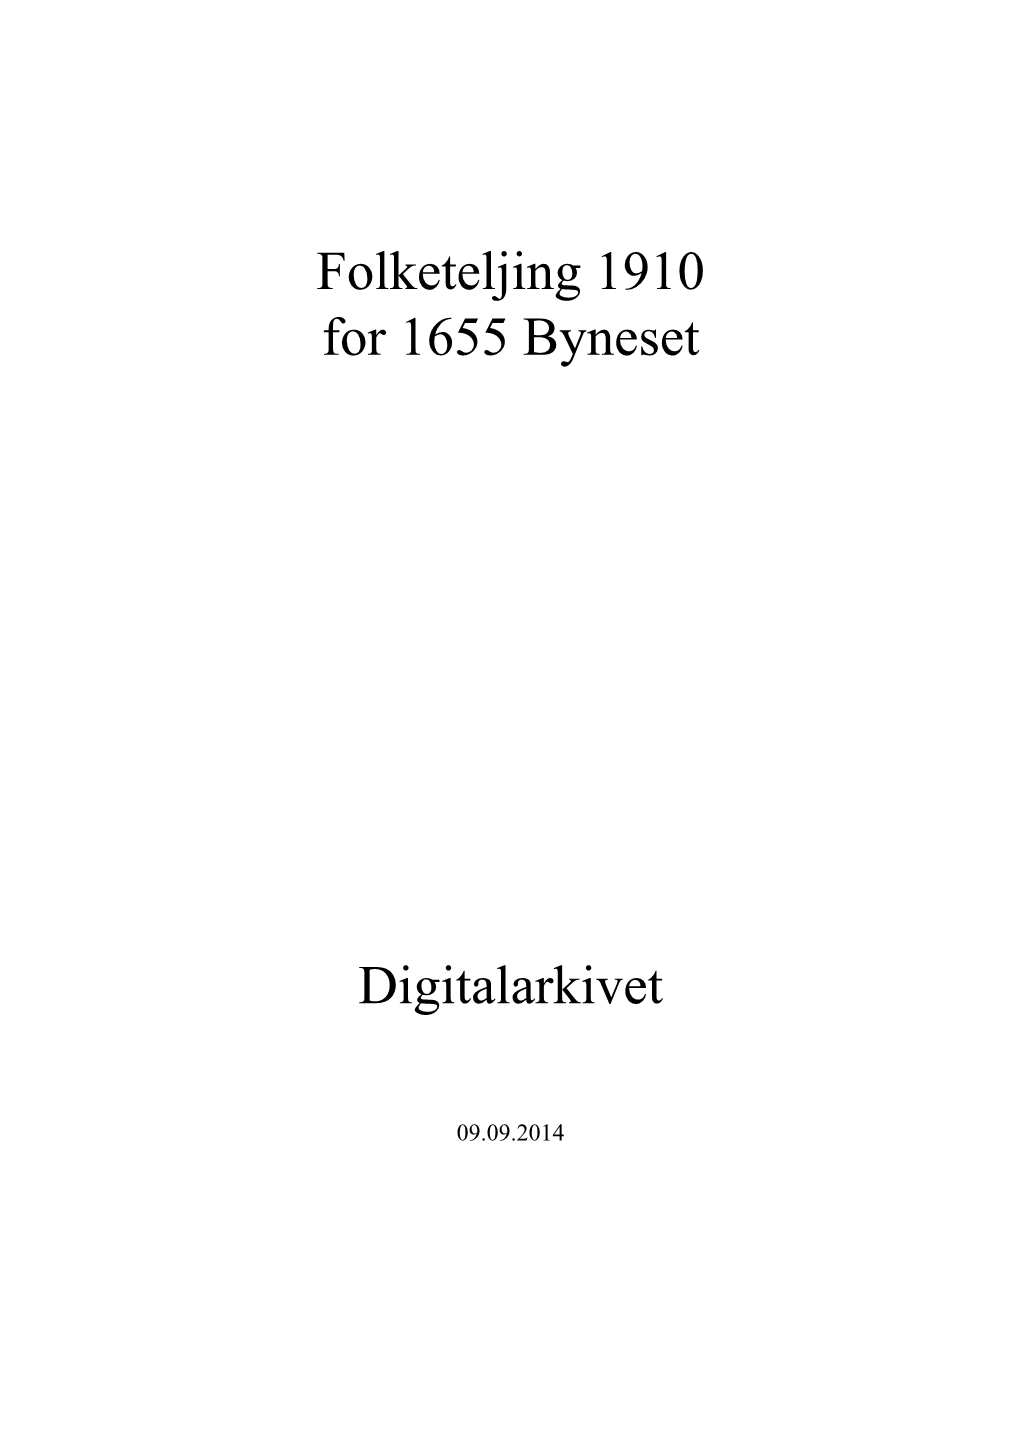 Folketeljing 1910 for 1655 Byneset Digitalarkivet